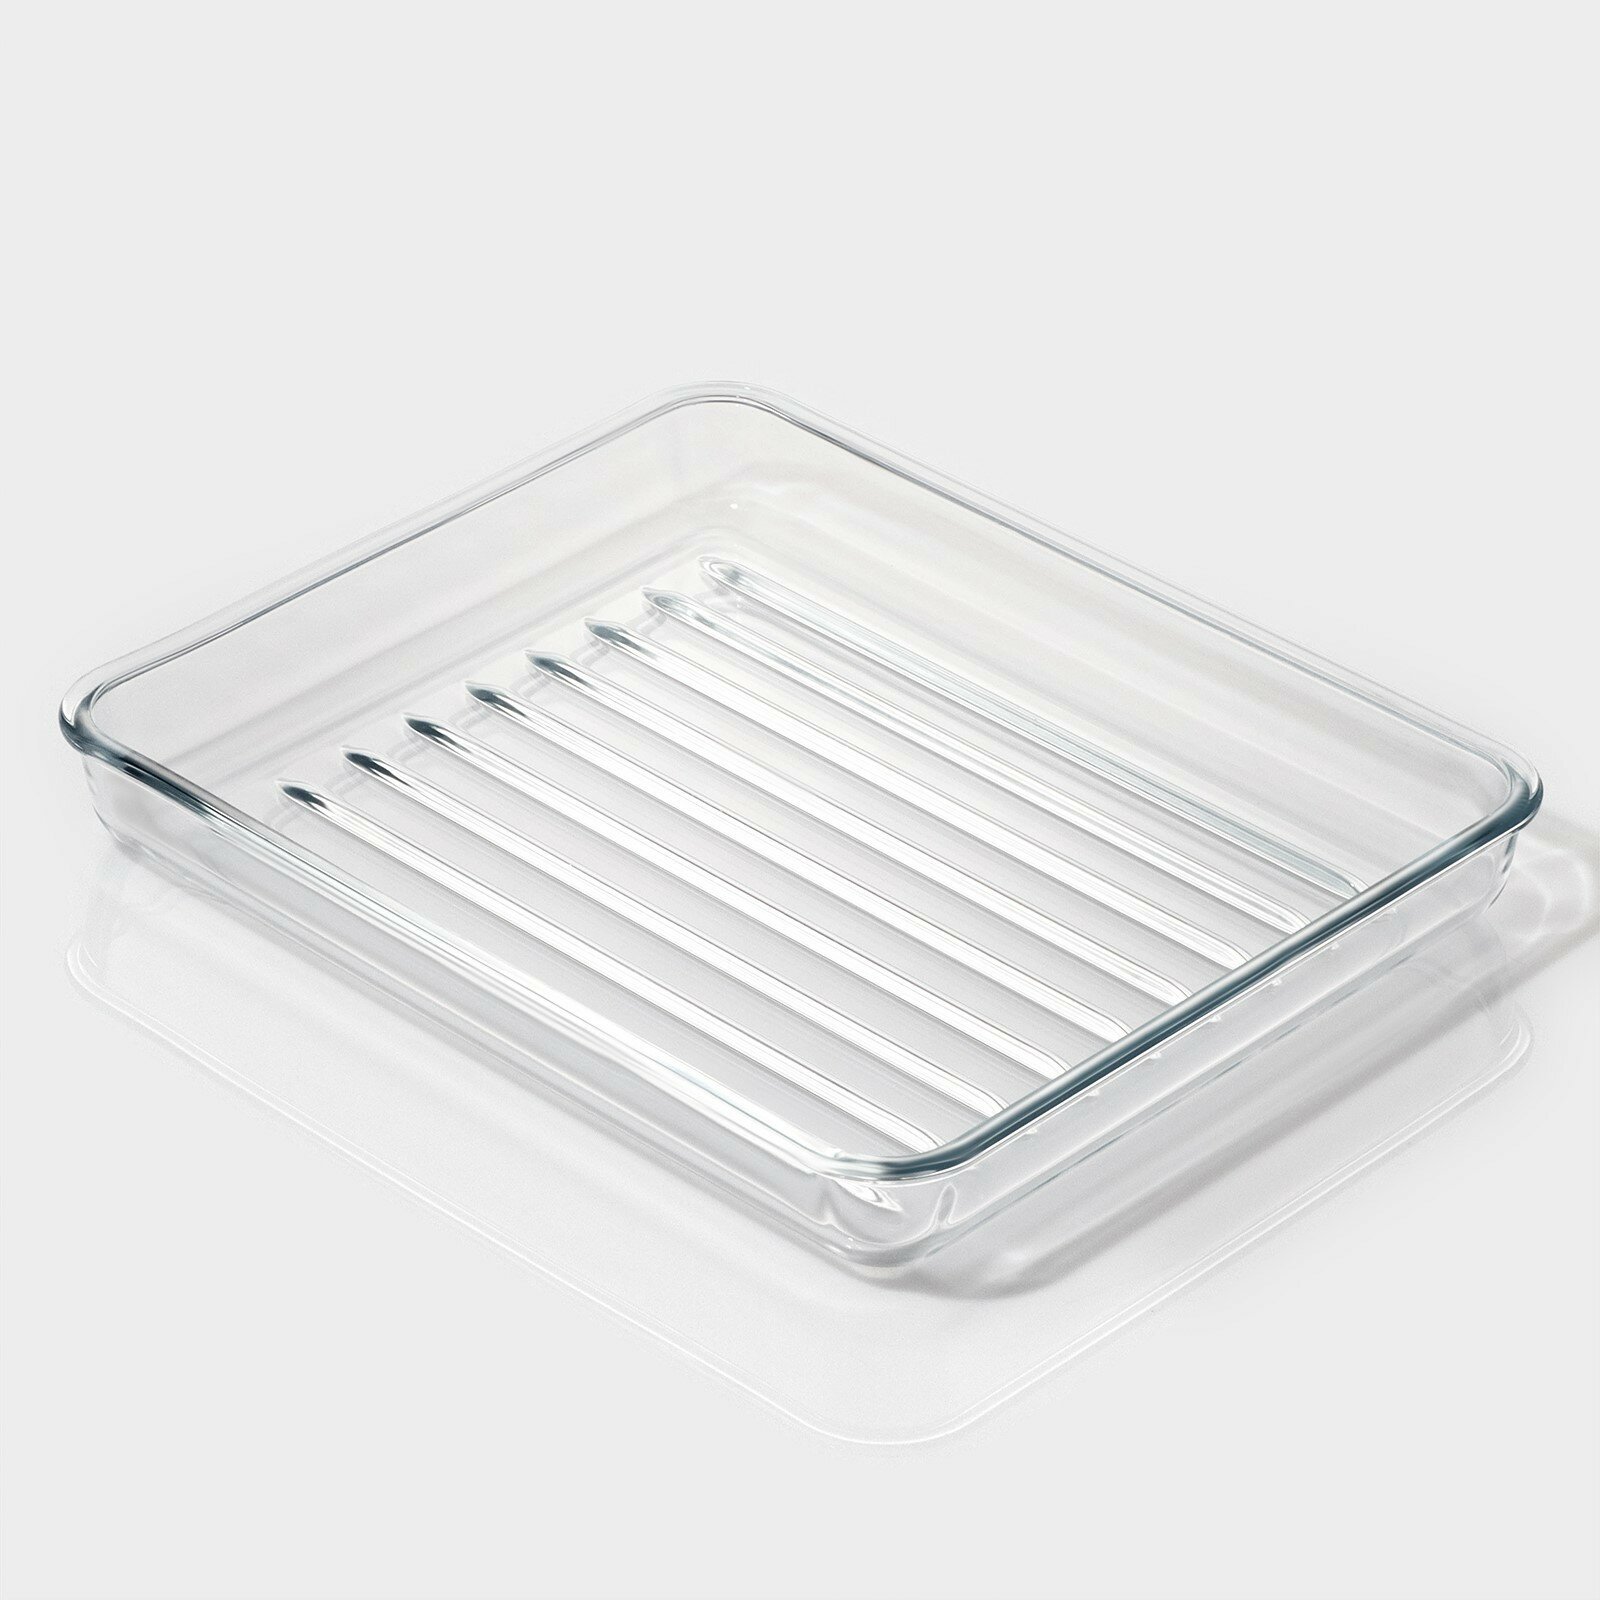 Форма для запекания и выпечки из жаропрочного стекла прямоугольная, 3 л, 34,5×28,5×4,6 см